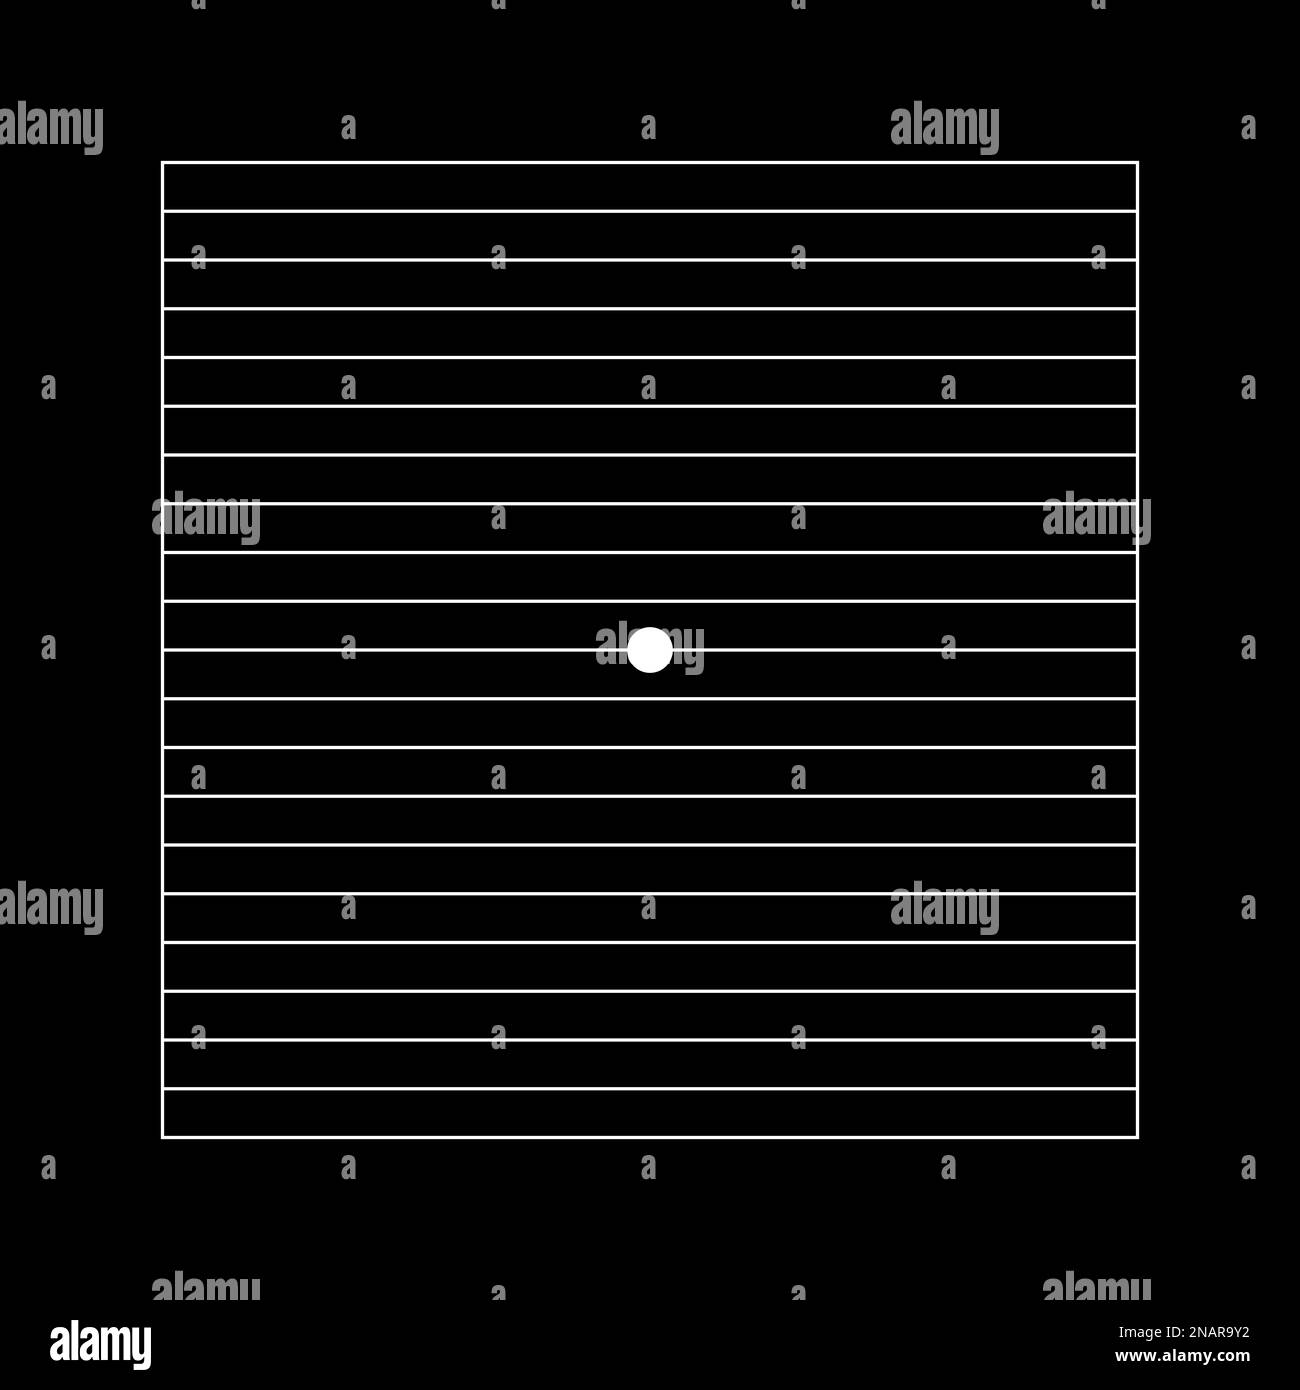 Grille Amsler avec point blanc central et lignes horizontales sur fond noir. Modèle de test graphique pour détecter la métamorphose. Ophtalmologique Illustration de Vecteur